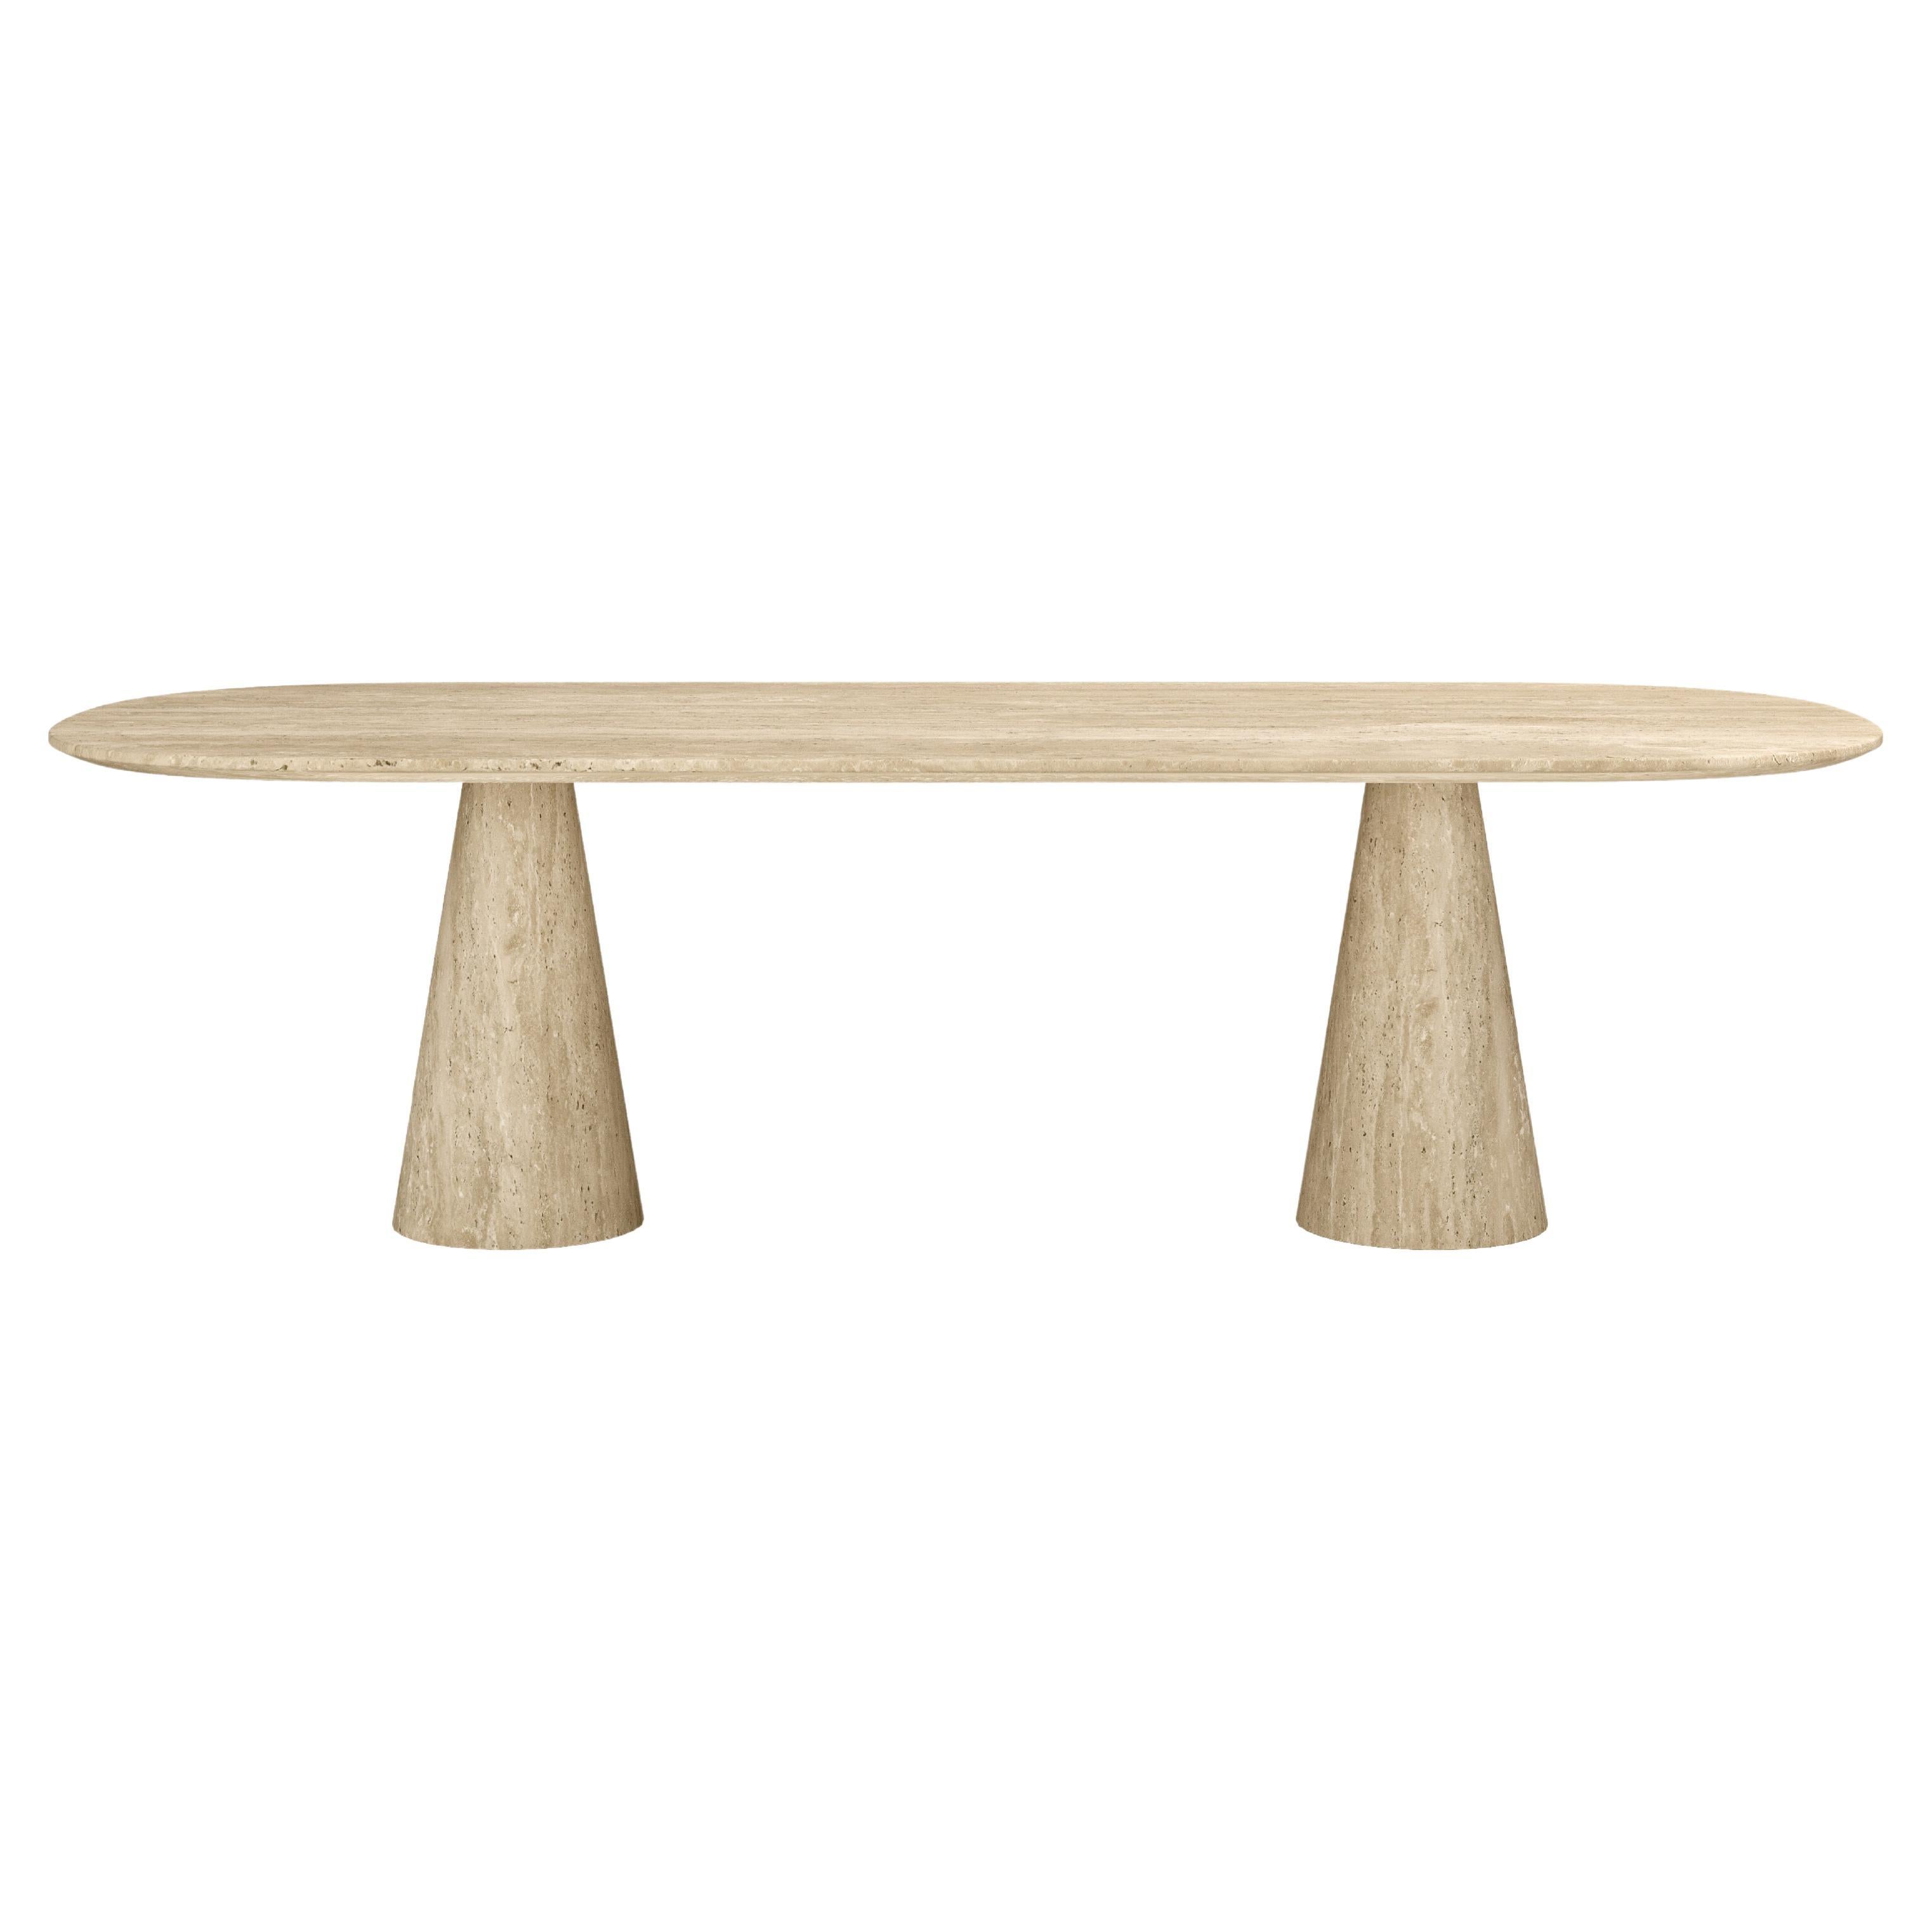 FORM(LA) Cono Oval Dining Table 84”L x 42”W x 30”H Travertino Crema VC For Sale